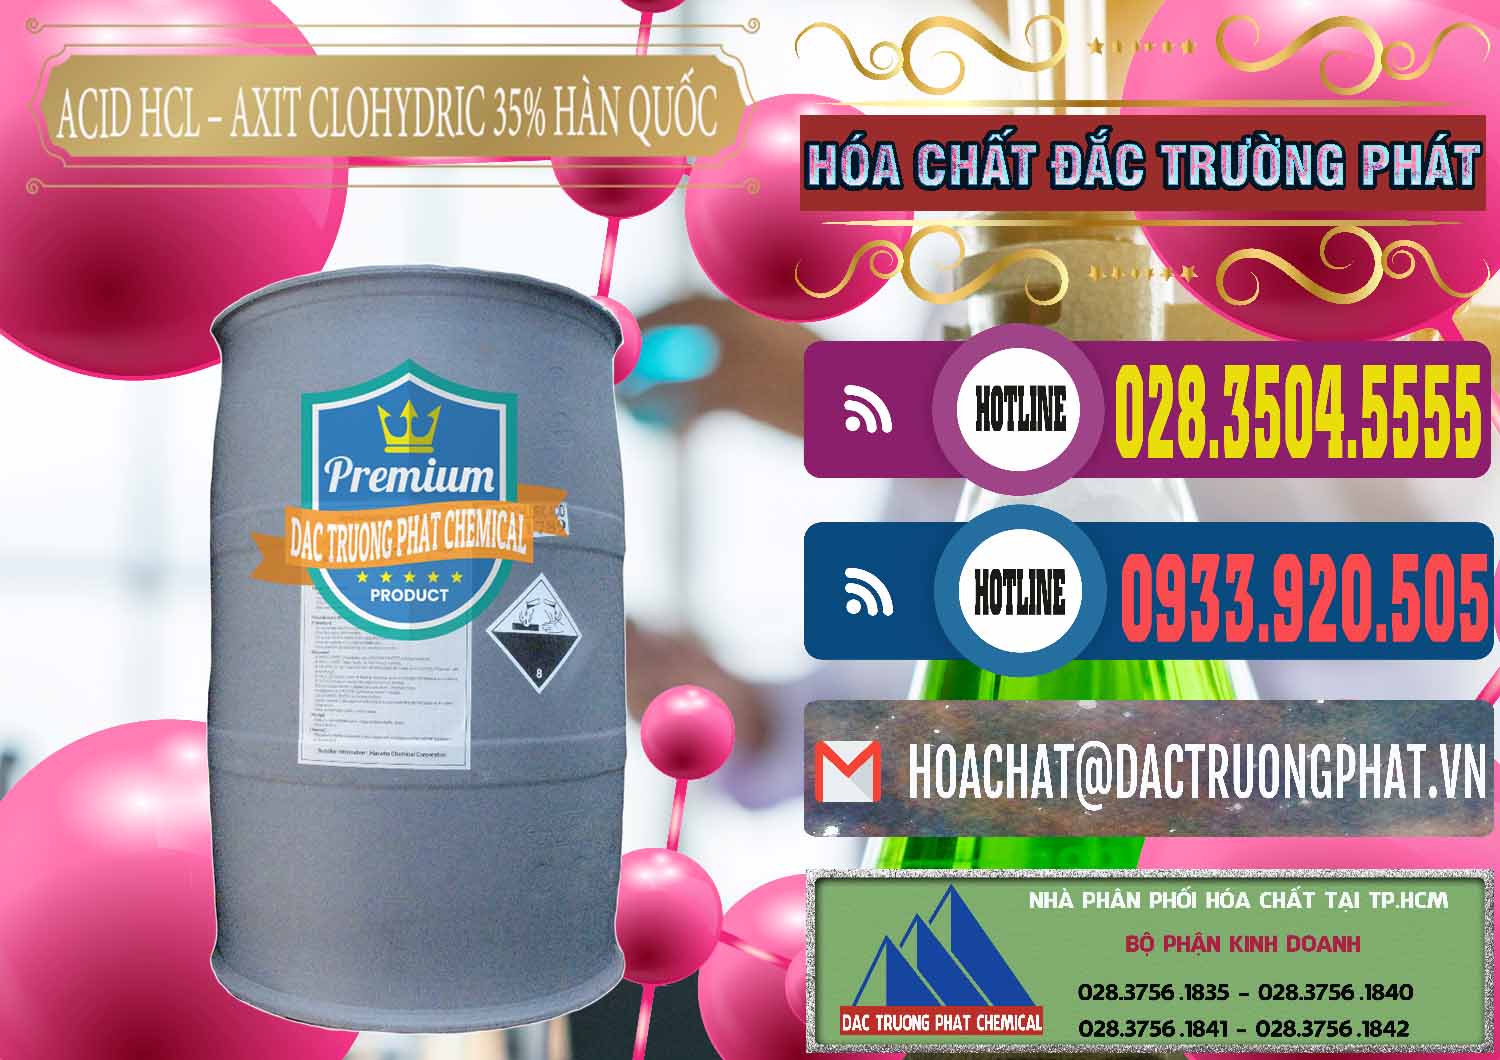 Cty chuyên nhập khẩu & bán Acid HCL - Axit Cohidric 35% Hàn Quốc Korea - 0011 - Cty chuyên nhập khẩu ( cung cấp ) hóa chất tại TP.HCM - muabanhoachat.com.vn